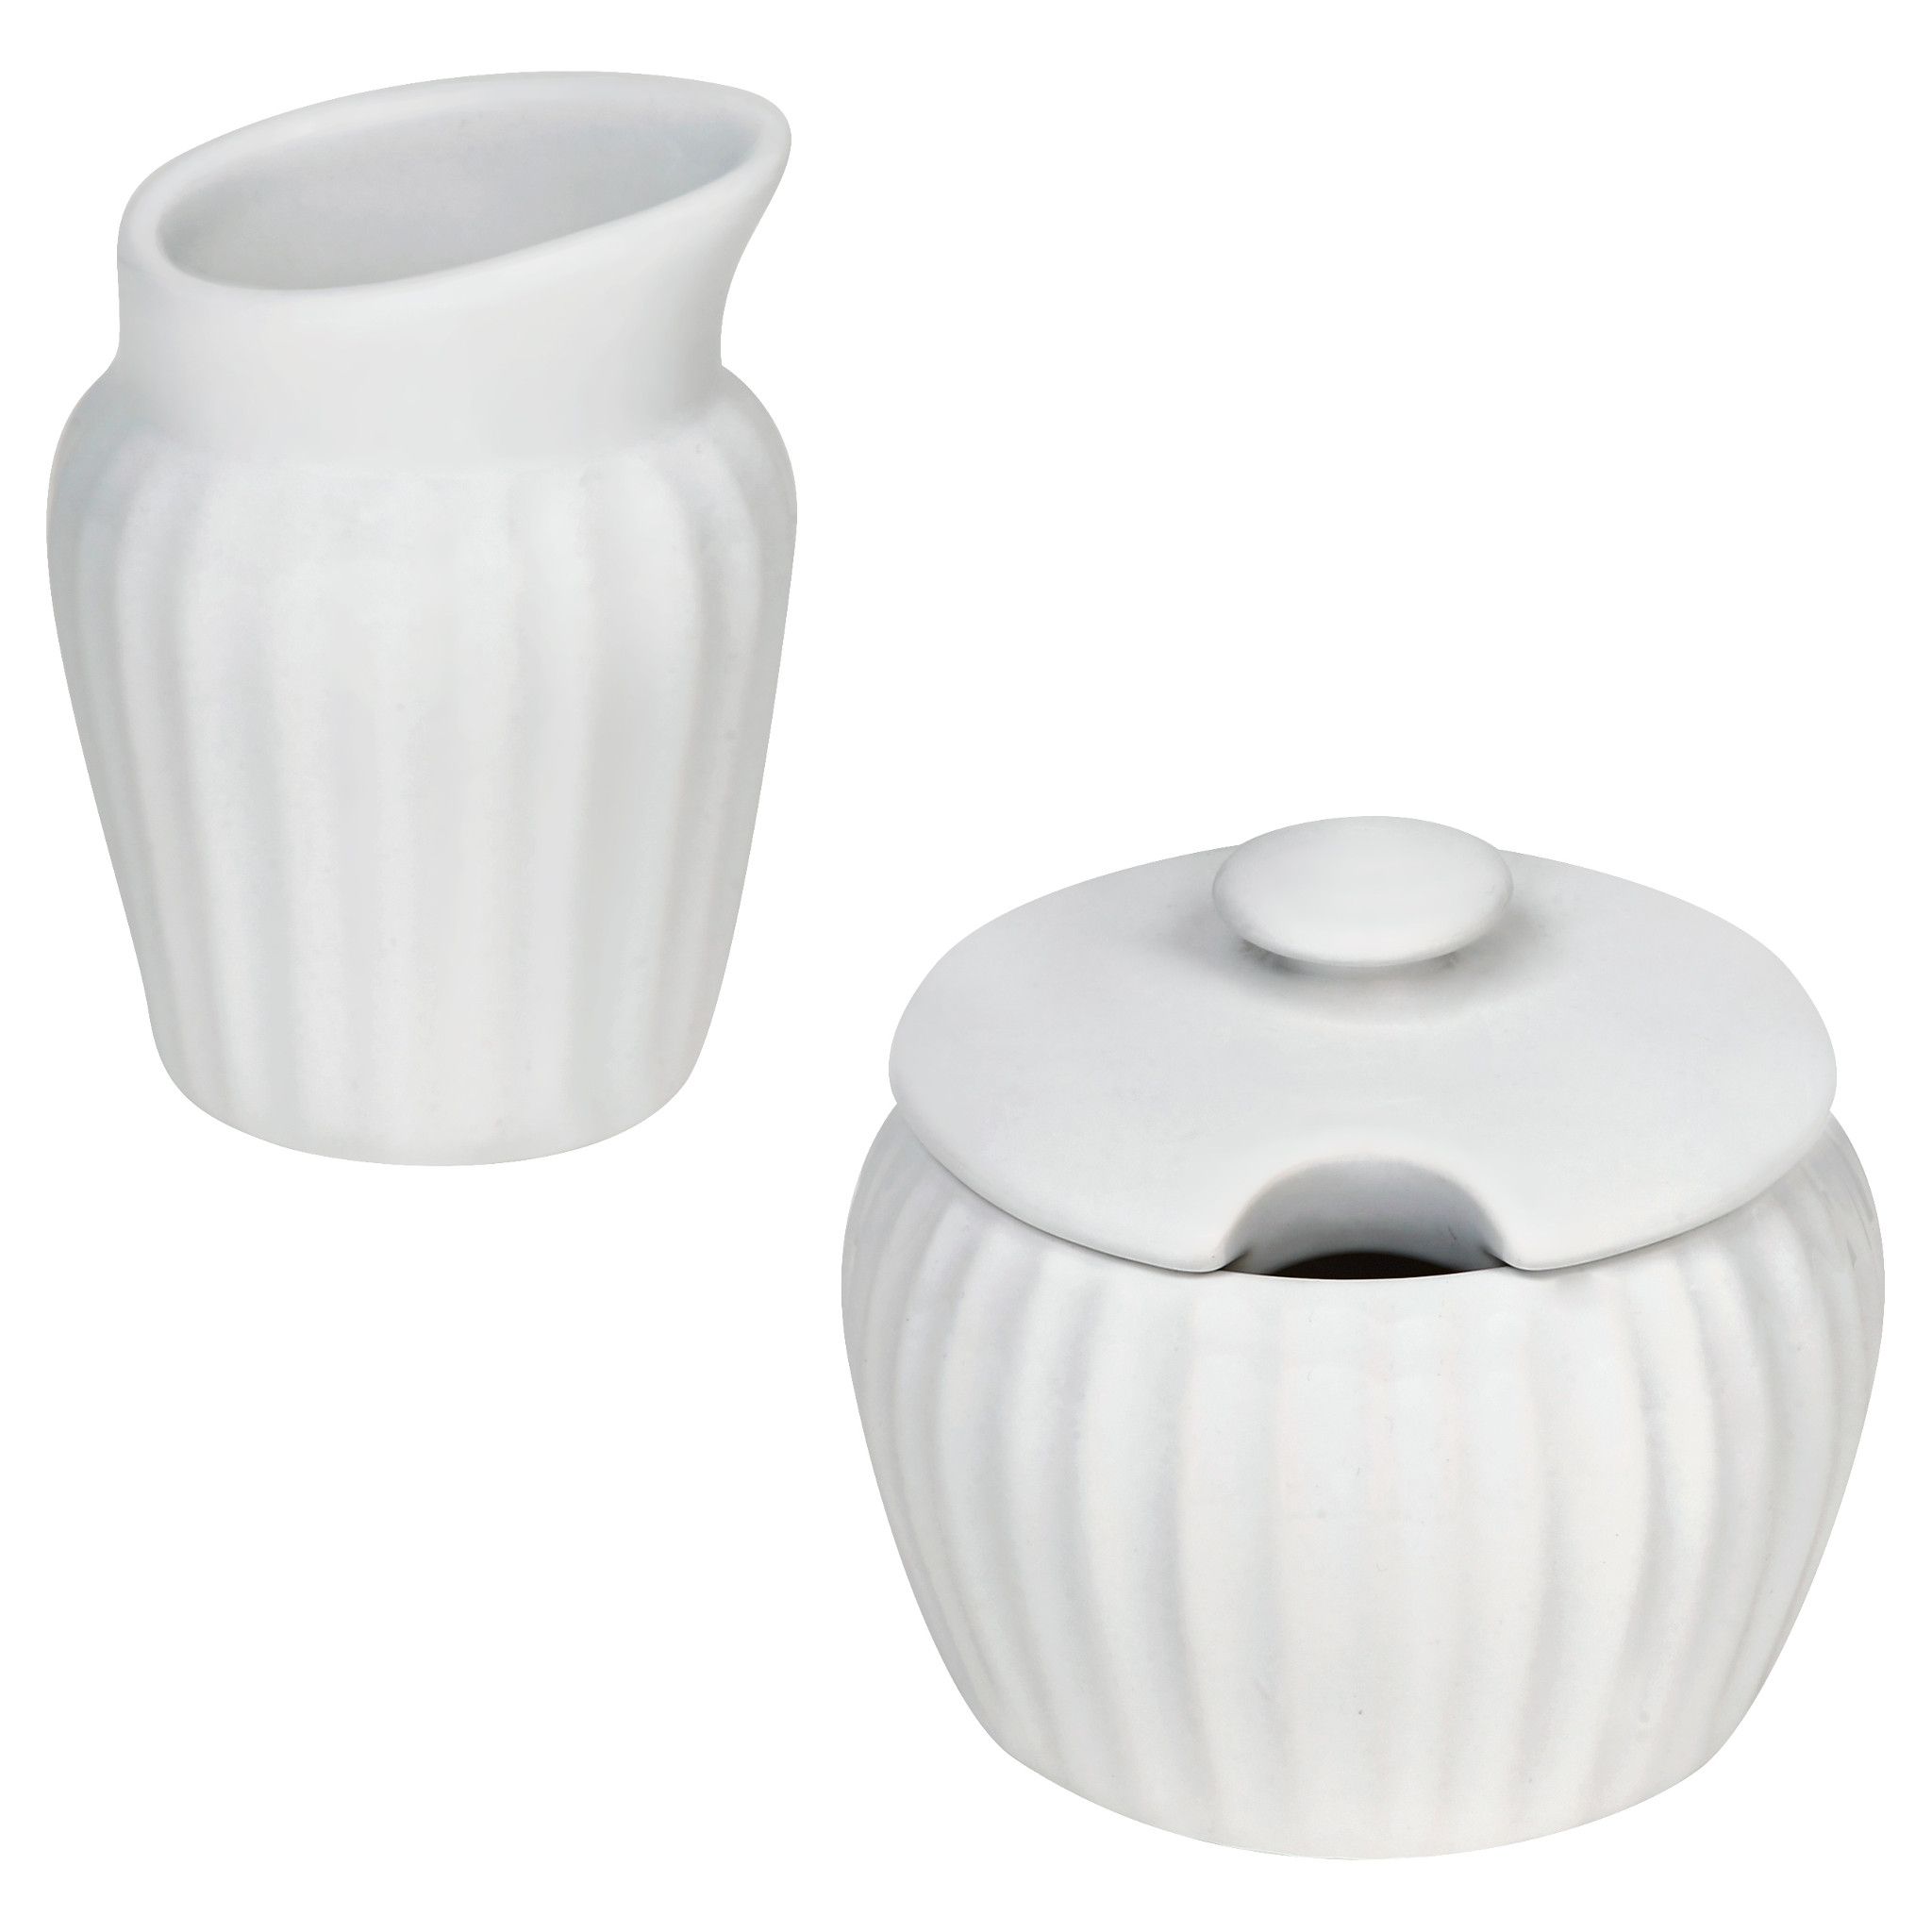 CorningWare® French White® 14-pc. Bakeware Set